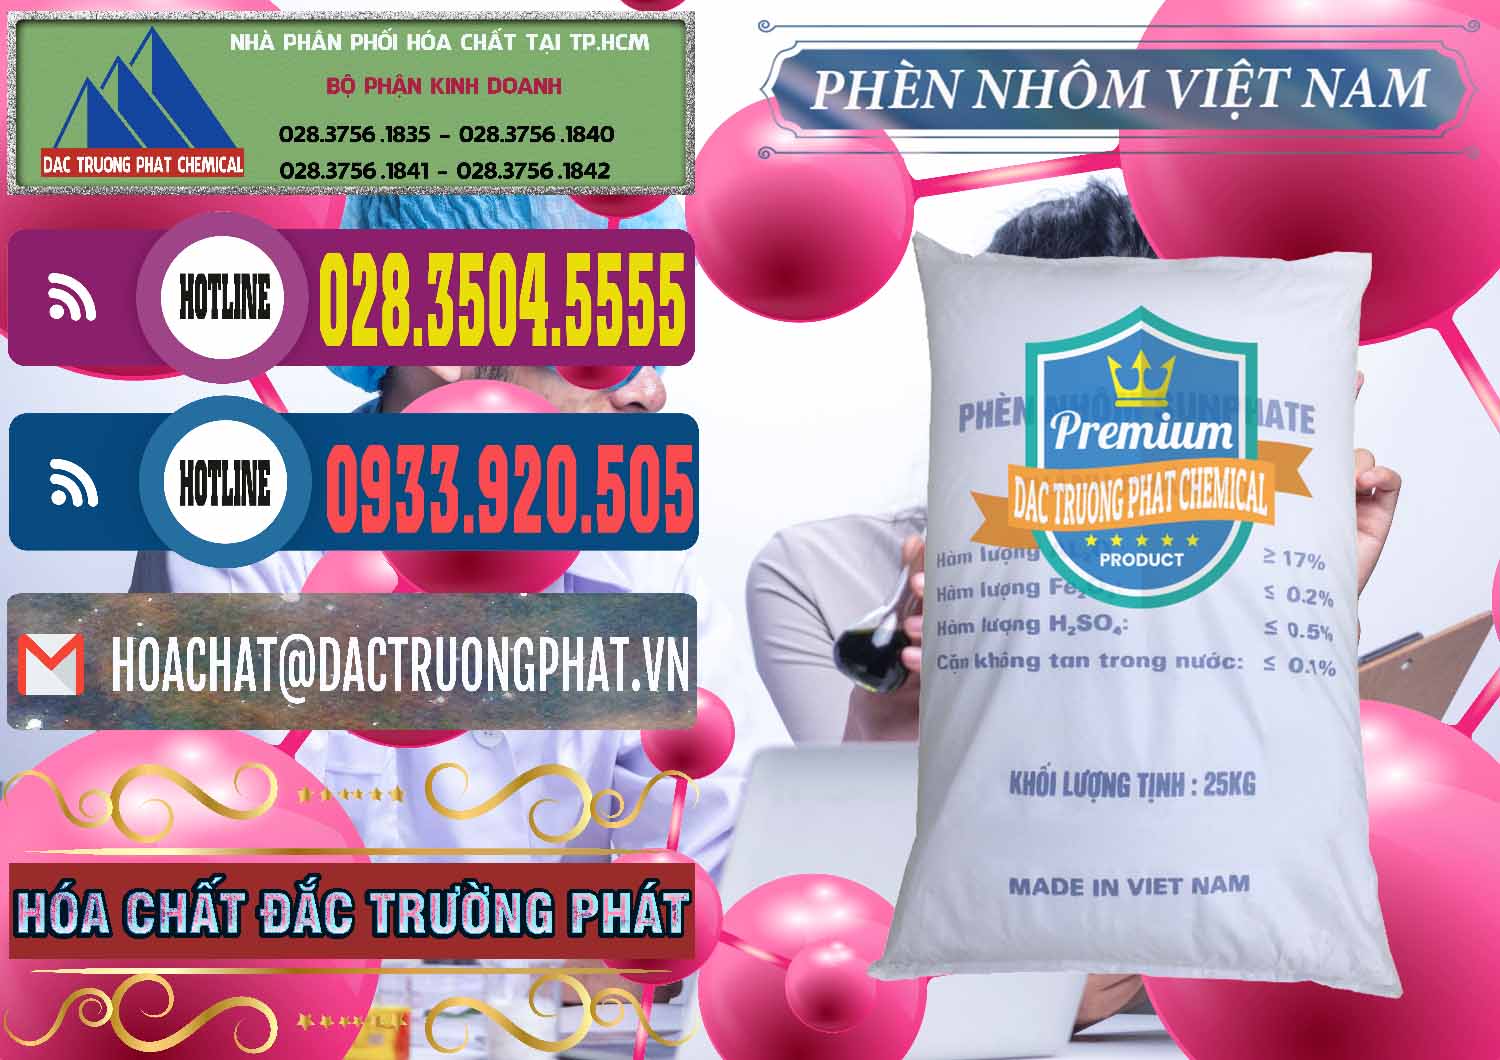 Nơi phân phối và cung cấp Phèn Nhôm - Al2(SO4)3 17% Việt Nam - 0465 - Công ty cung cấp ( kinh doanh ) hóa chất tại TP.HCM - muabanhoachat.com.vn